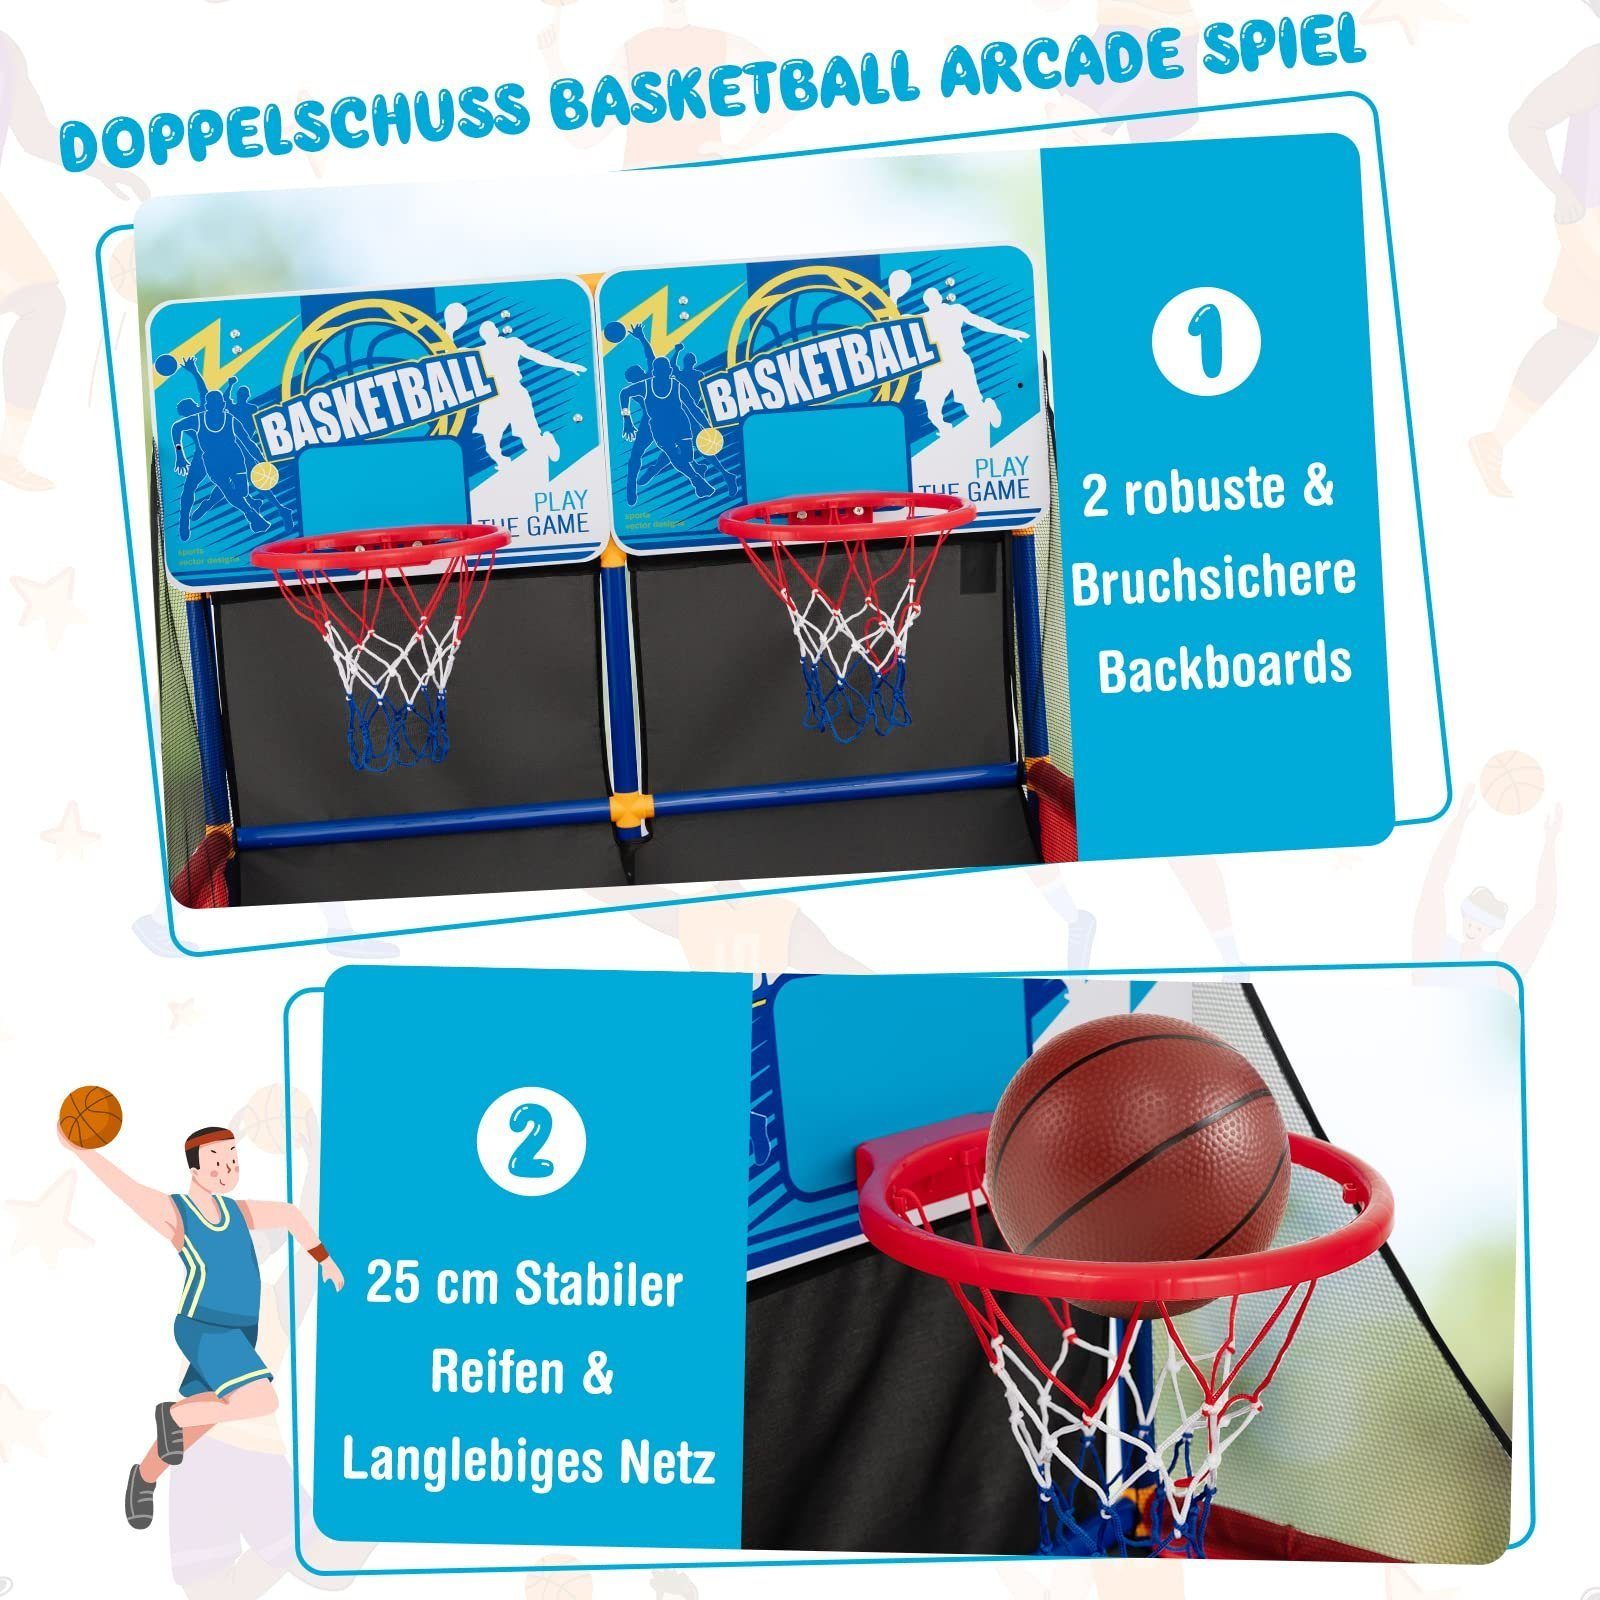 COSTWAY Basketballkorb Arcade Basketballspiel, für In-/Outdoor 2 Spieler